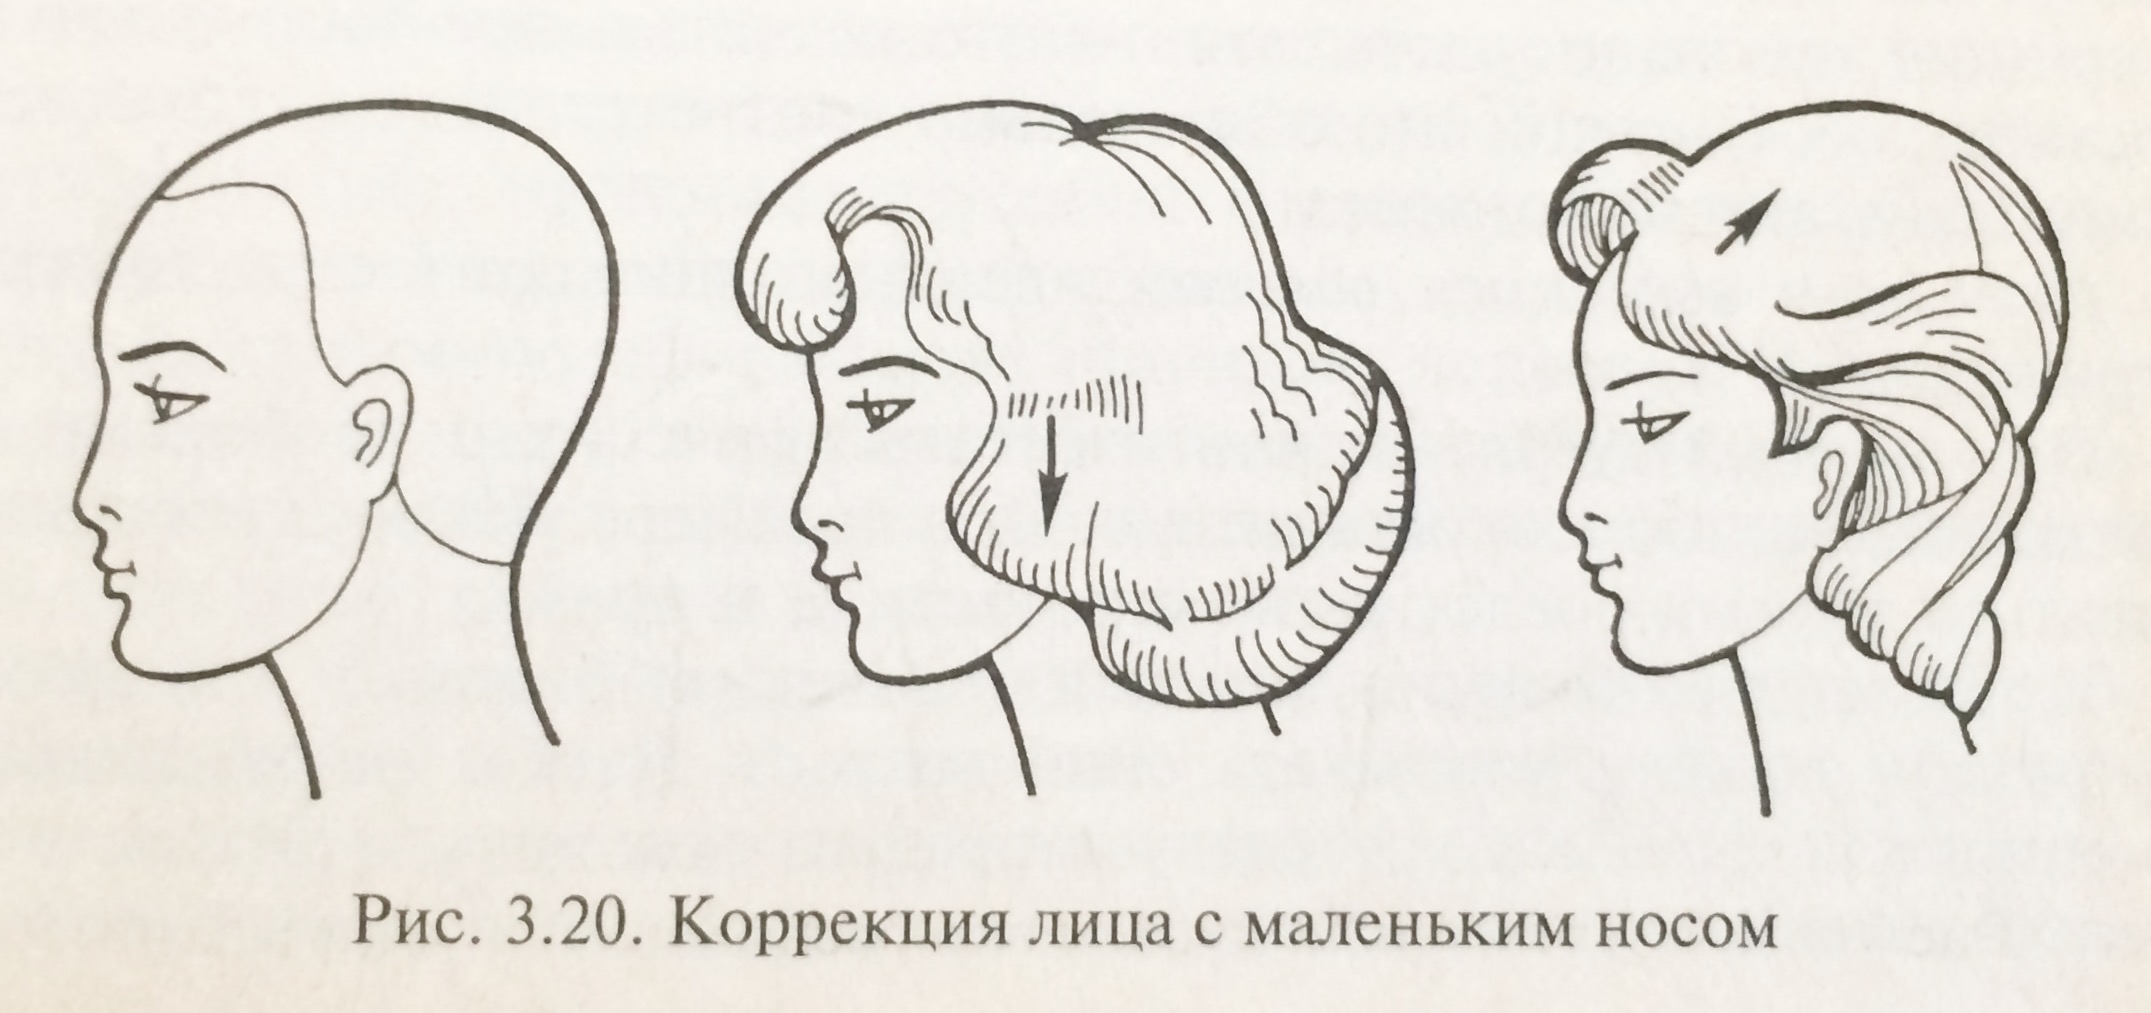 Объем прическа форма головы